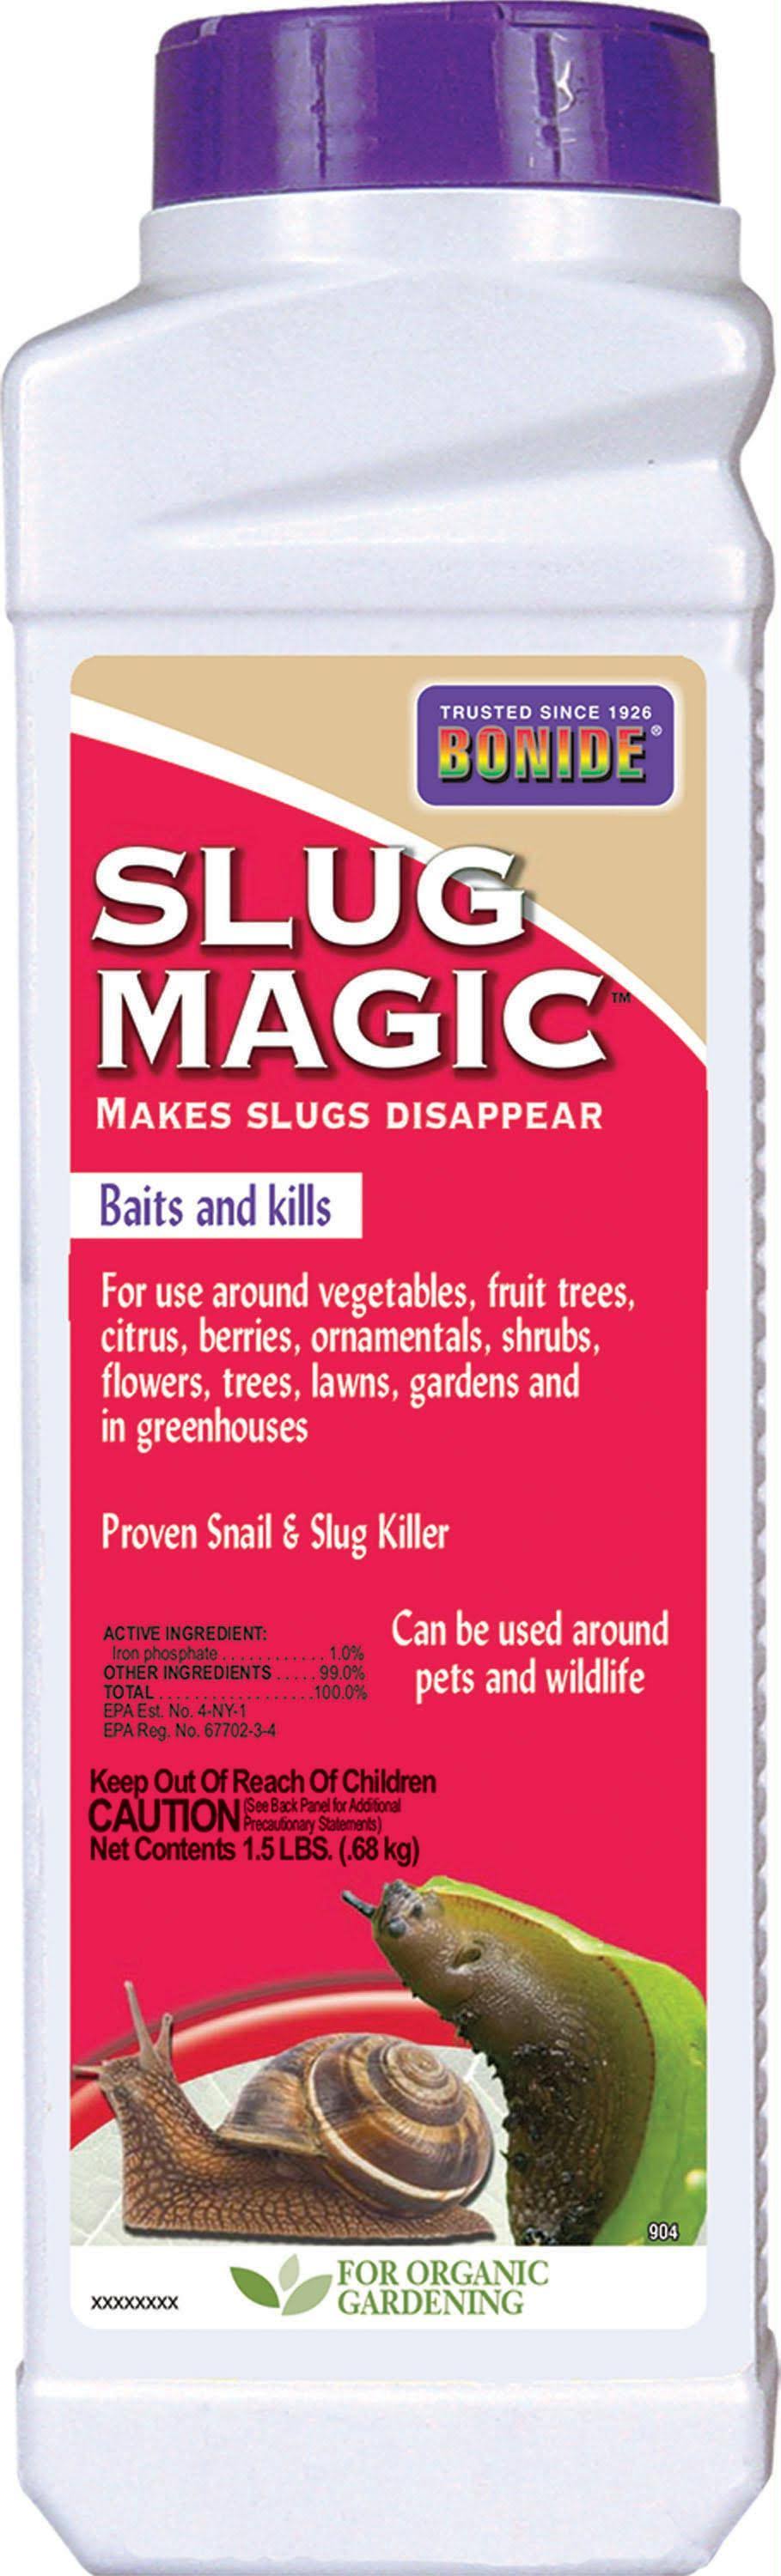 Bonide 904 Slug Magic Home Pest Repellents - 24oz